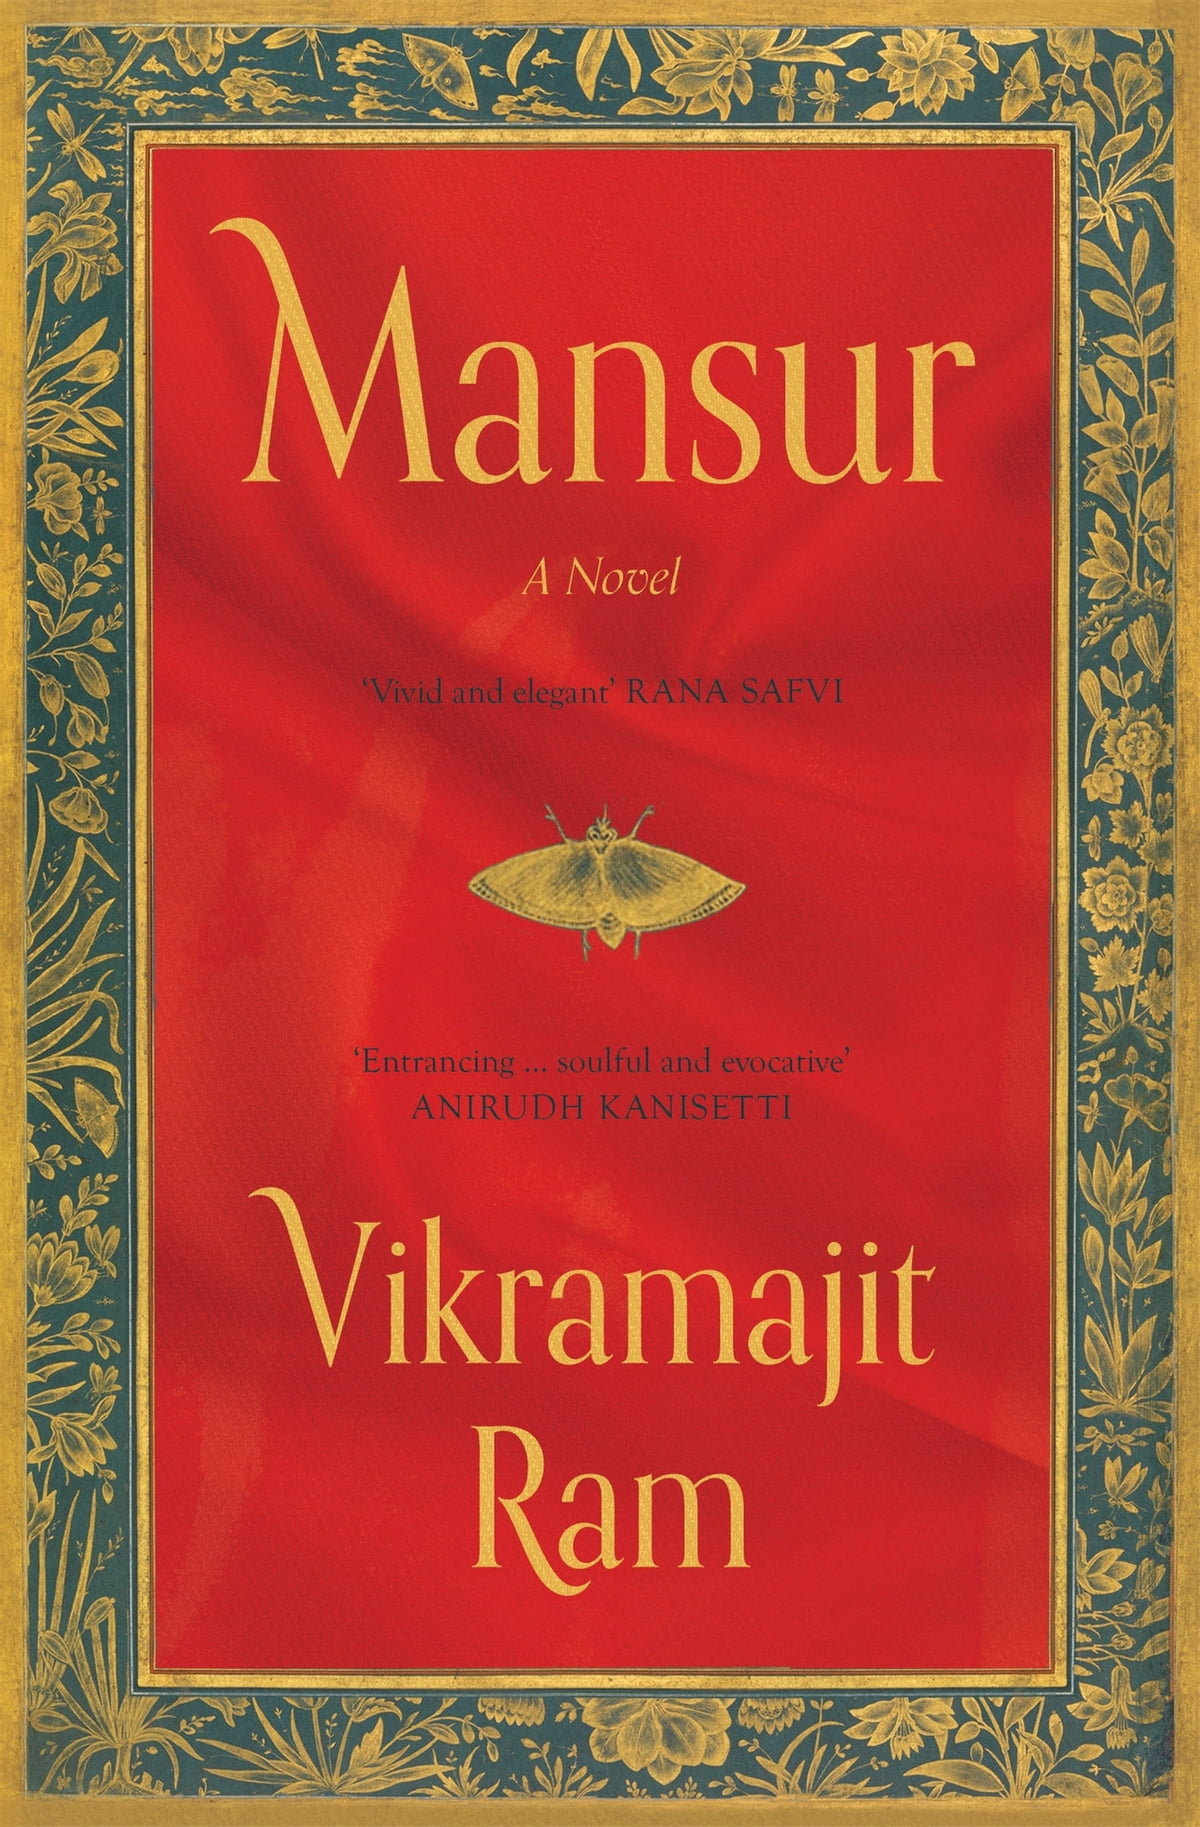 Mansur: A Novel by Vikramajit Ram